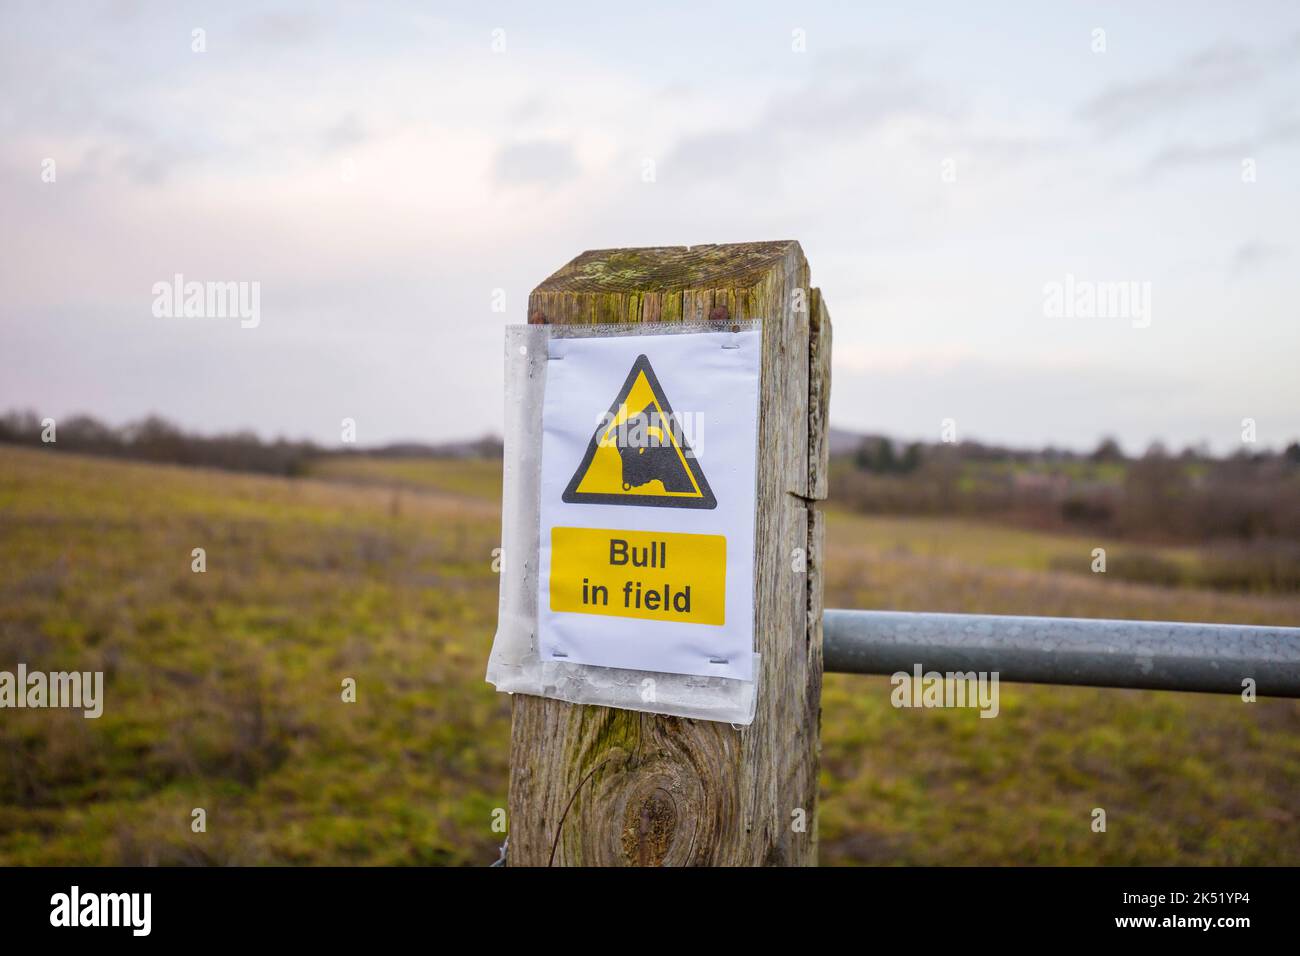 Nahaufnahme eines isolierten öffentlichen Hinweises, um zu wissen, dass es einen „Bullen im Feld“ gibt. Sicherheitshinweise für den ländlichen Raum in Großbritannien. Stockfoto